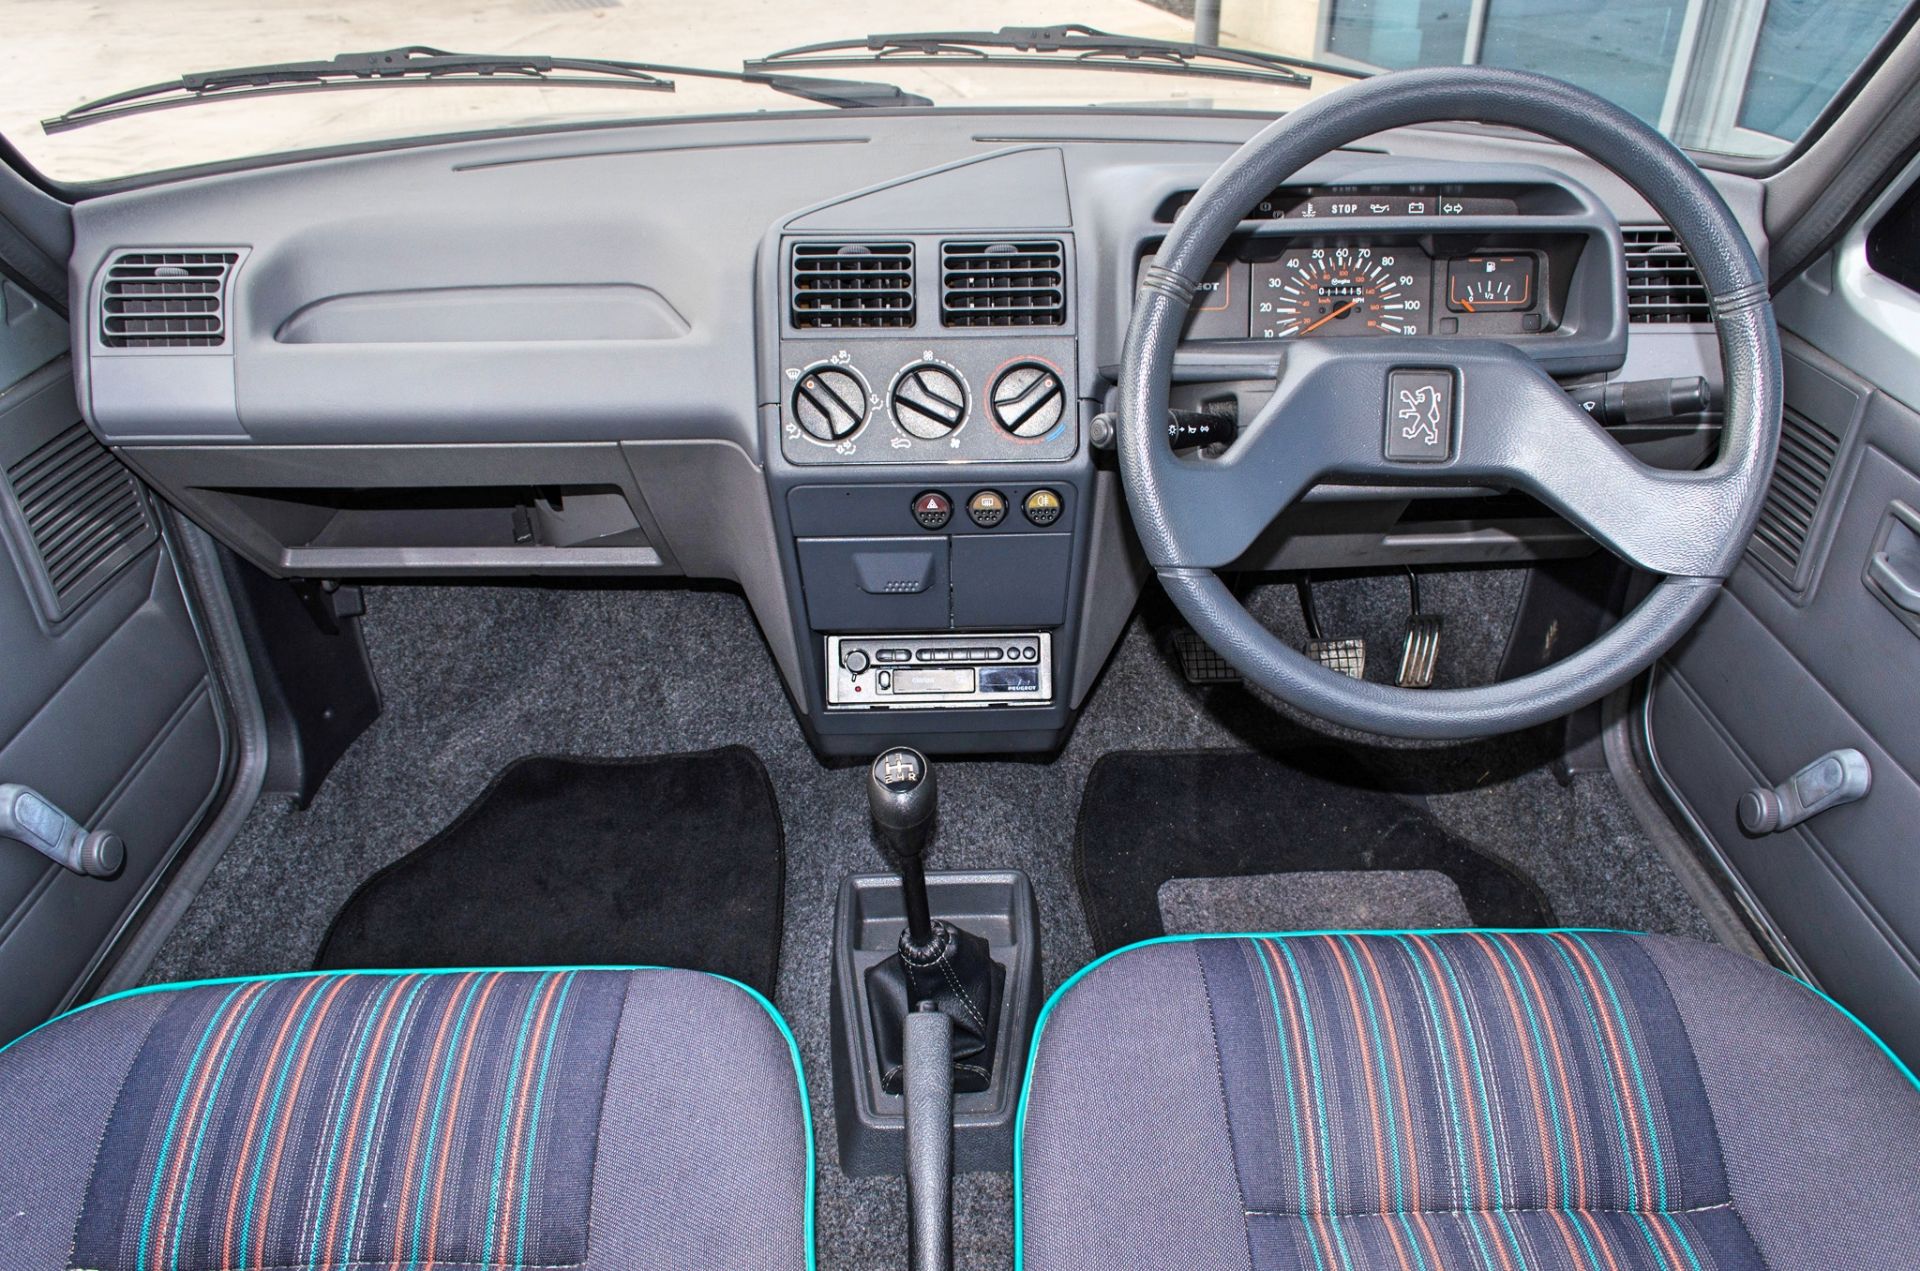 1991 Peugeot 205 954cc Trio 3 door hatchback - Image 42 of 55